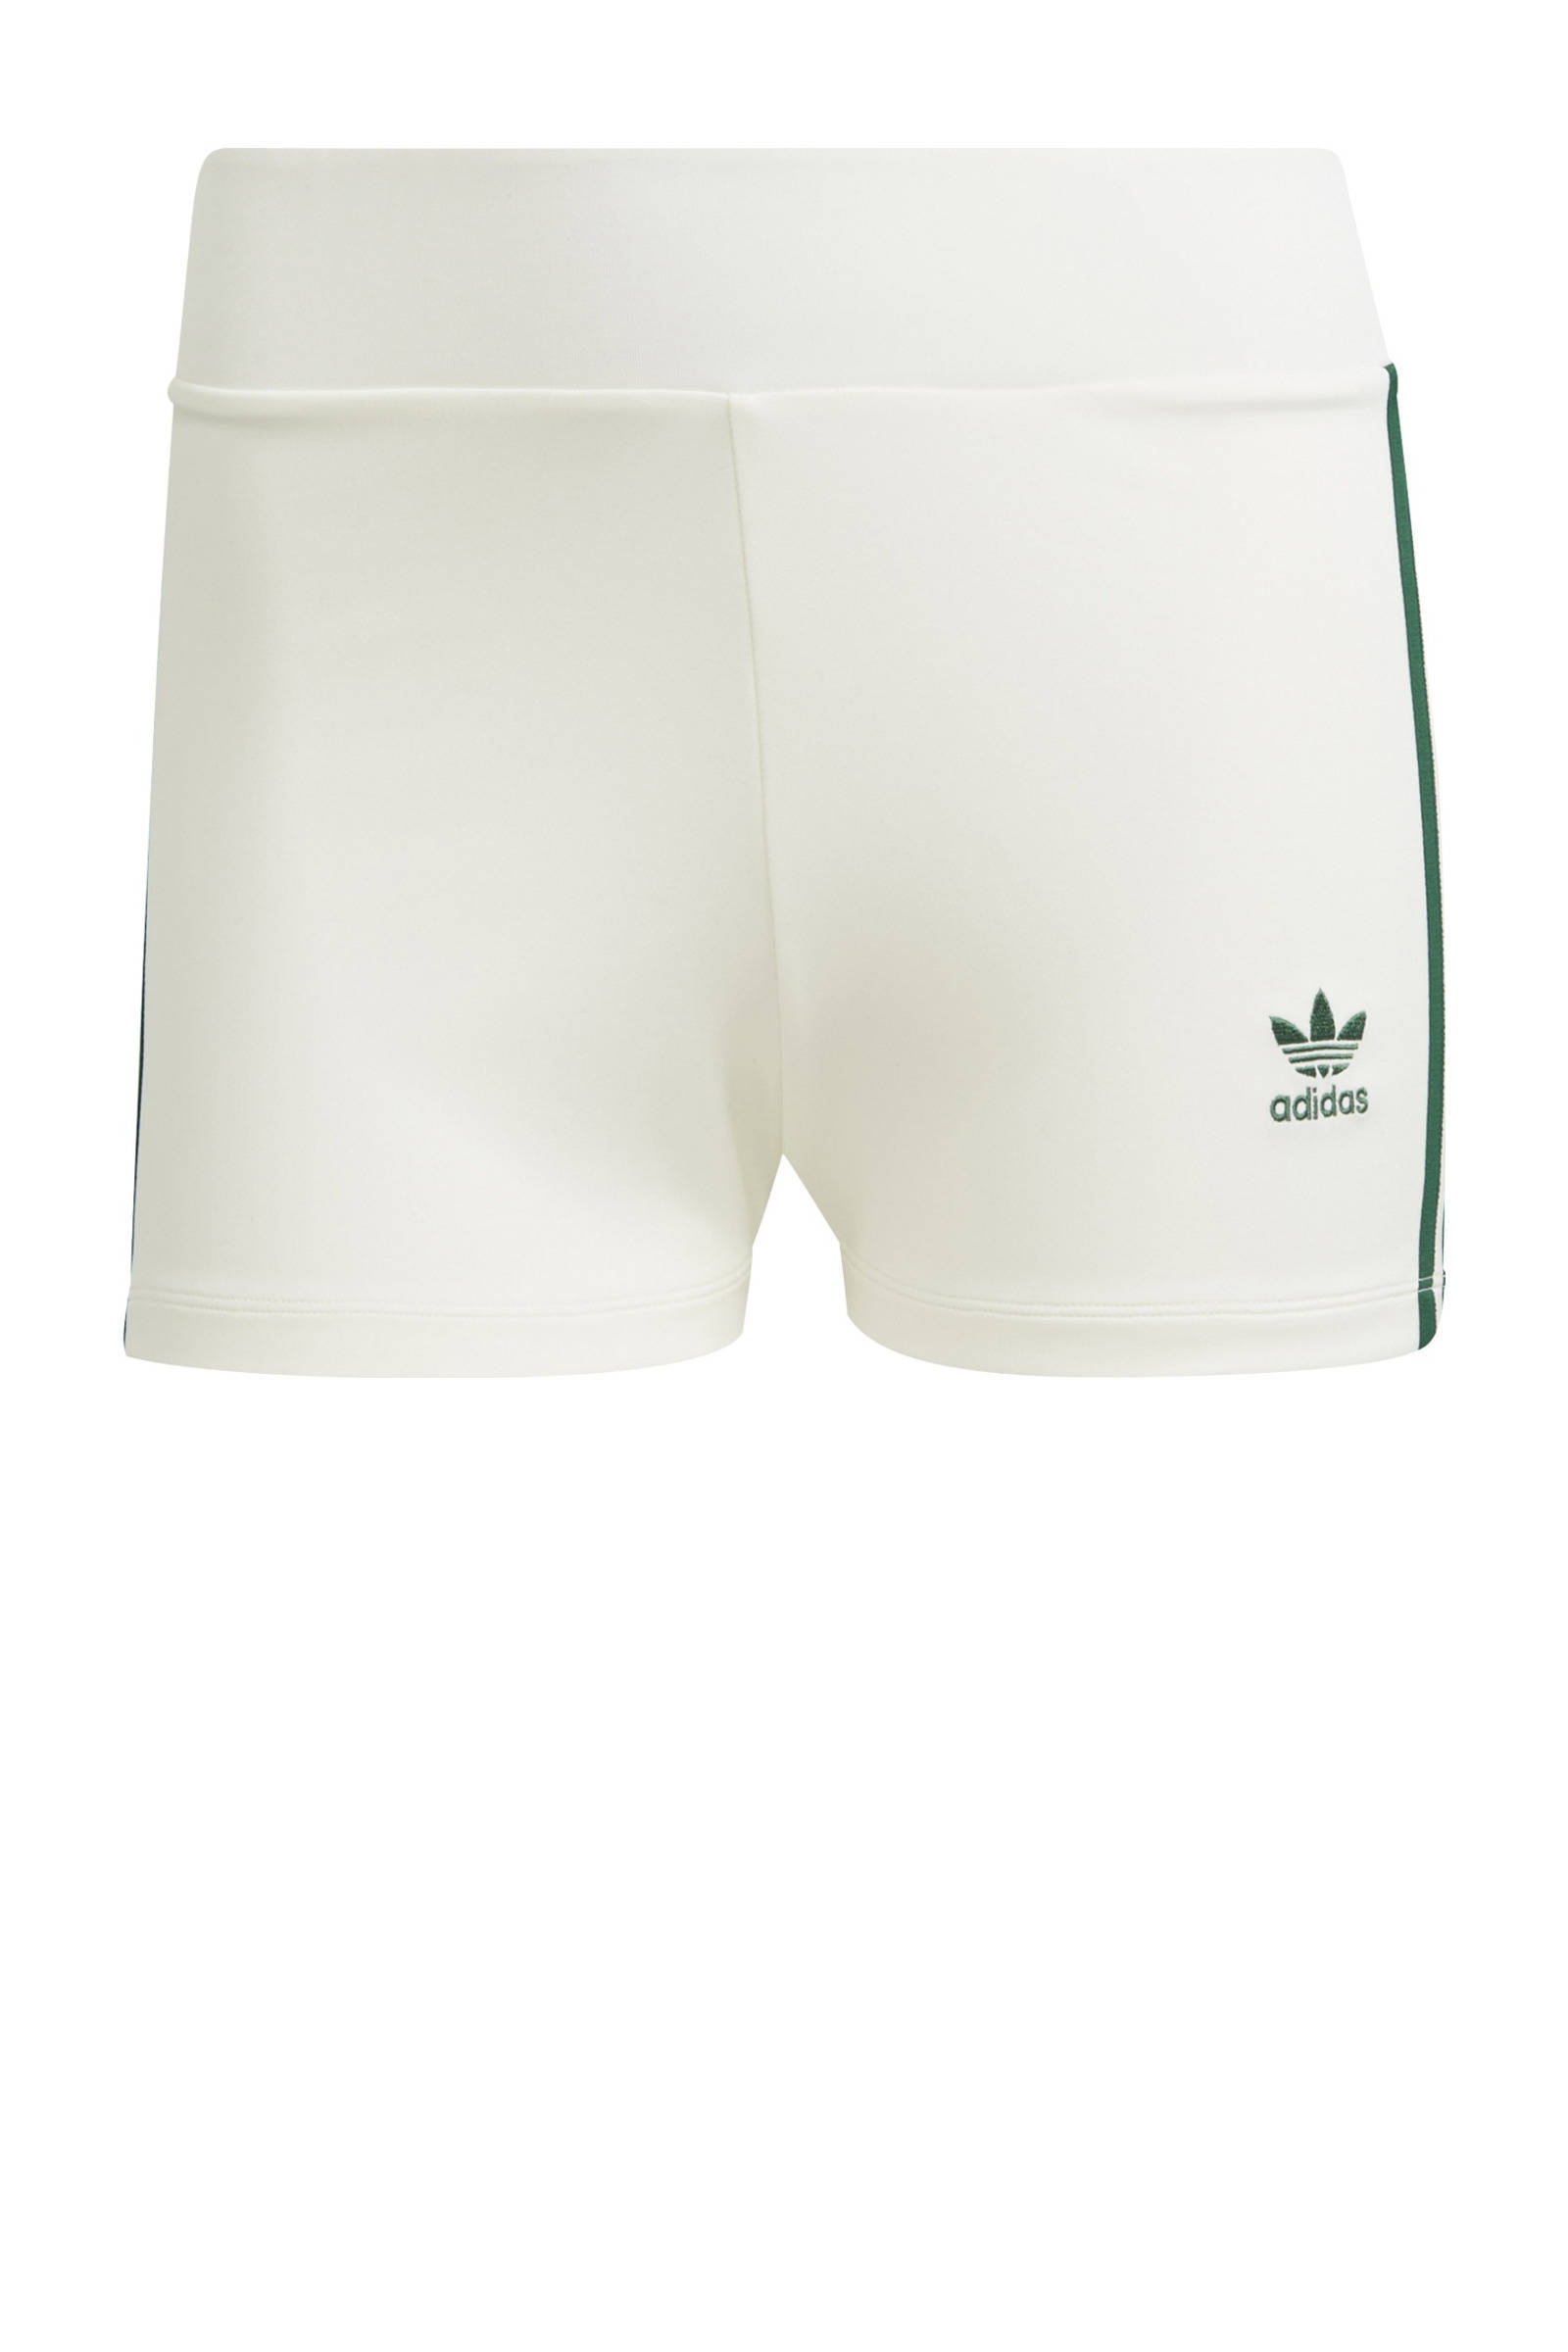 Adidas Originals 'Tennis Luxe' Booty shorts met logo en 3 Stripes in gebroken wit online kopen